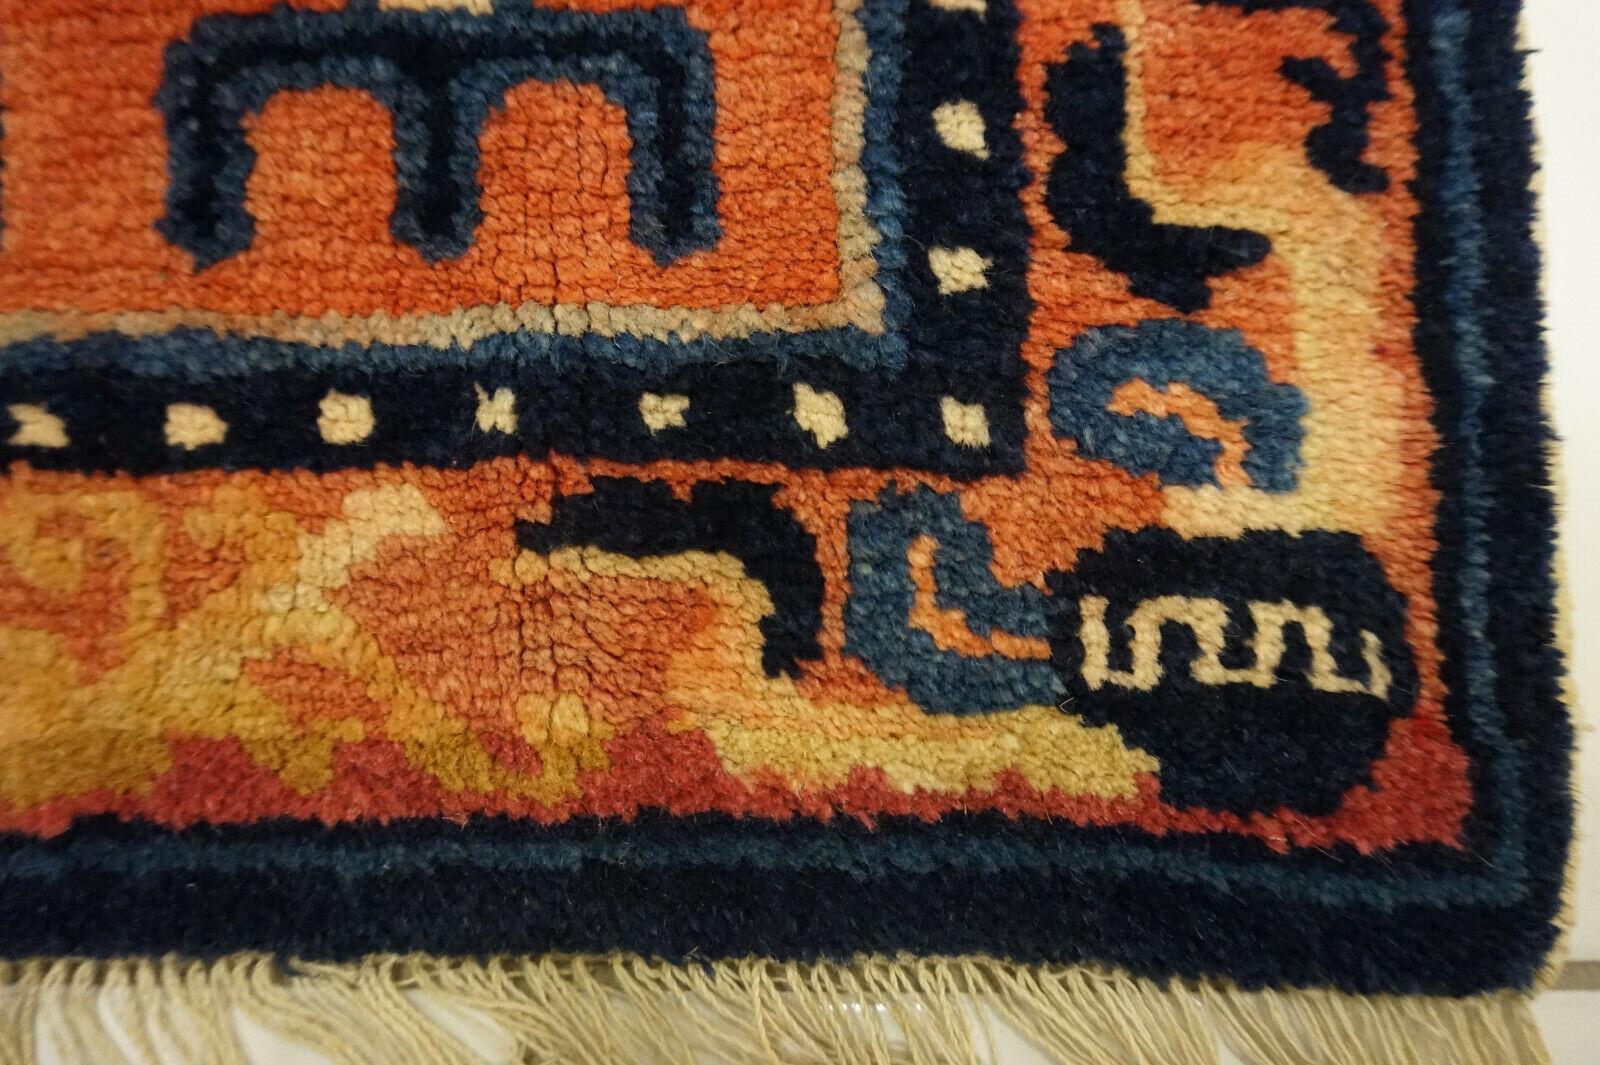 Erhöhen Sie Ihre Einrichtung mit diesem handgefertigten antiken chinesischen Ningsha Collectional Rug. Dieser Teppich stammt aus der Zeit um 1900 und ist ein Zeugnis für die Kunstfertigkeit und Handwerkskunst dieser Epoche.

Wesentliche